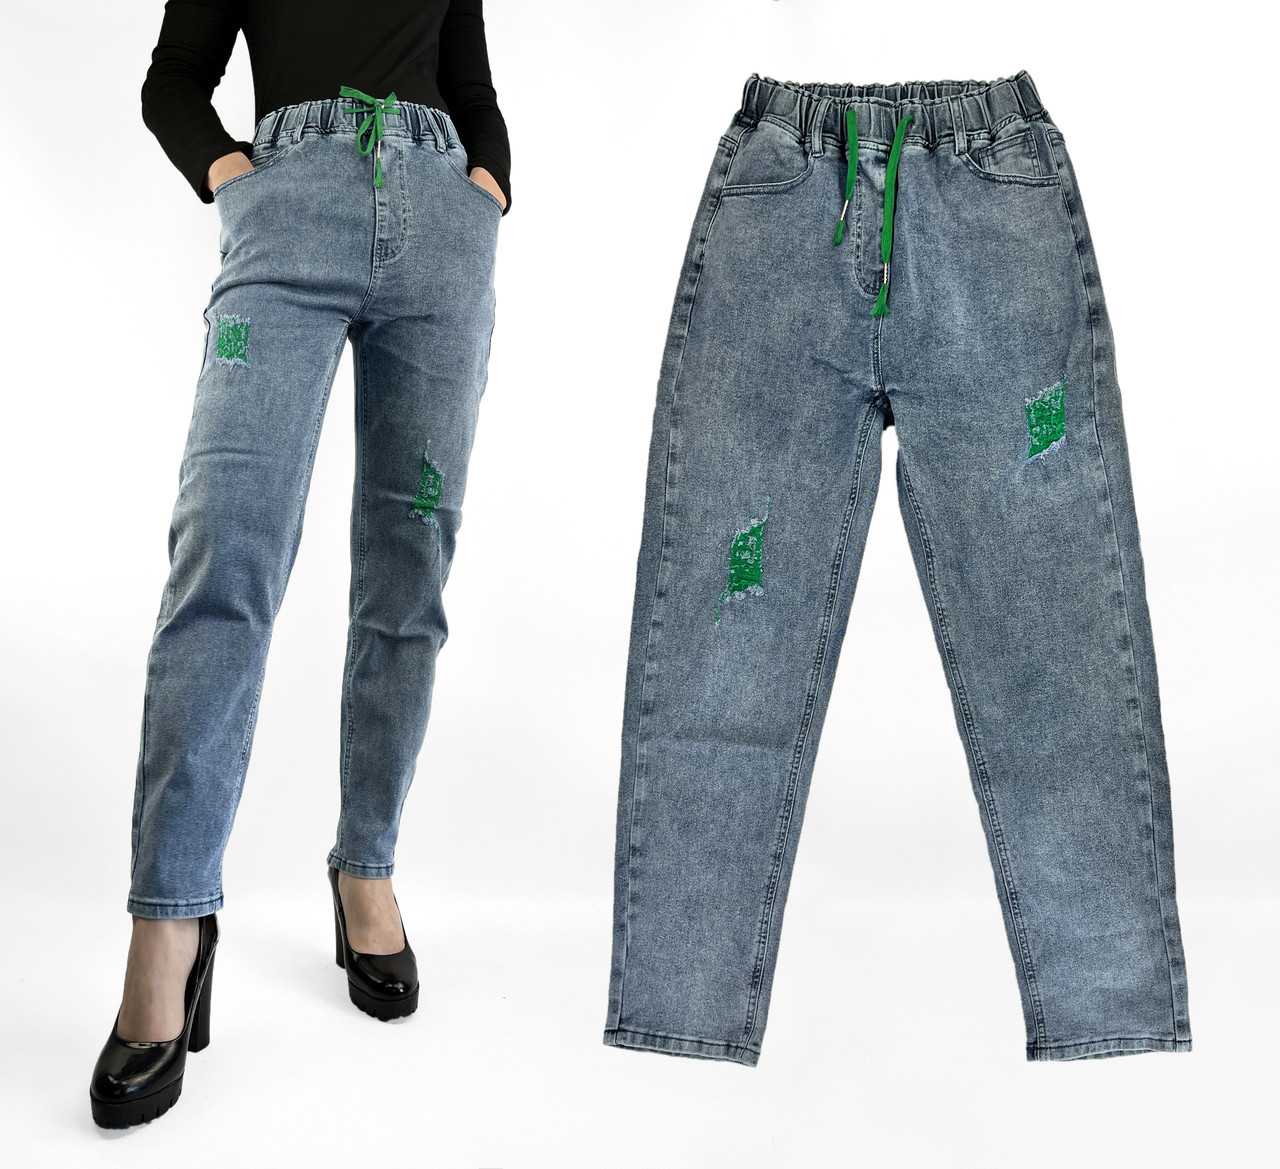 Джинси МОМ на гумці Жіночі стильні джинси з потертостями розміри 28-32 Зелені виворіт